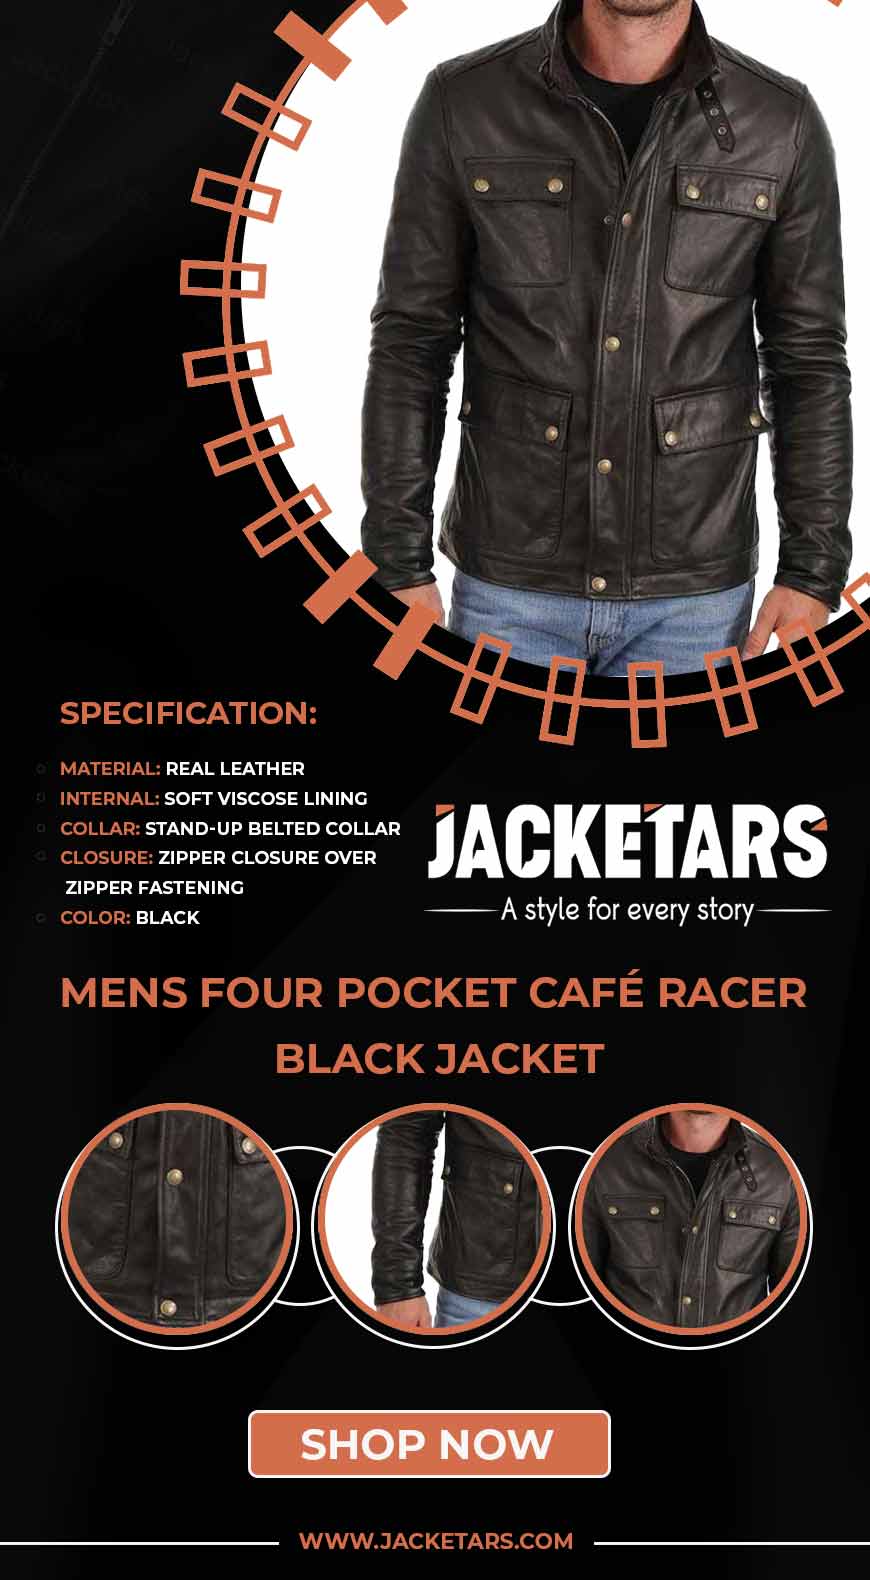 https://jacketars.com/wp-content/uploads/2021/03/Mens-Four-Pocket-Cafe-Racer-Black-Jacket.jpg